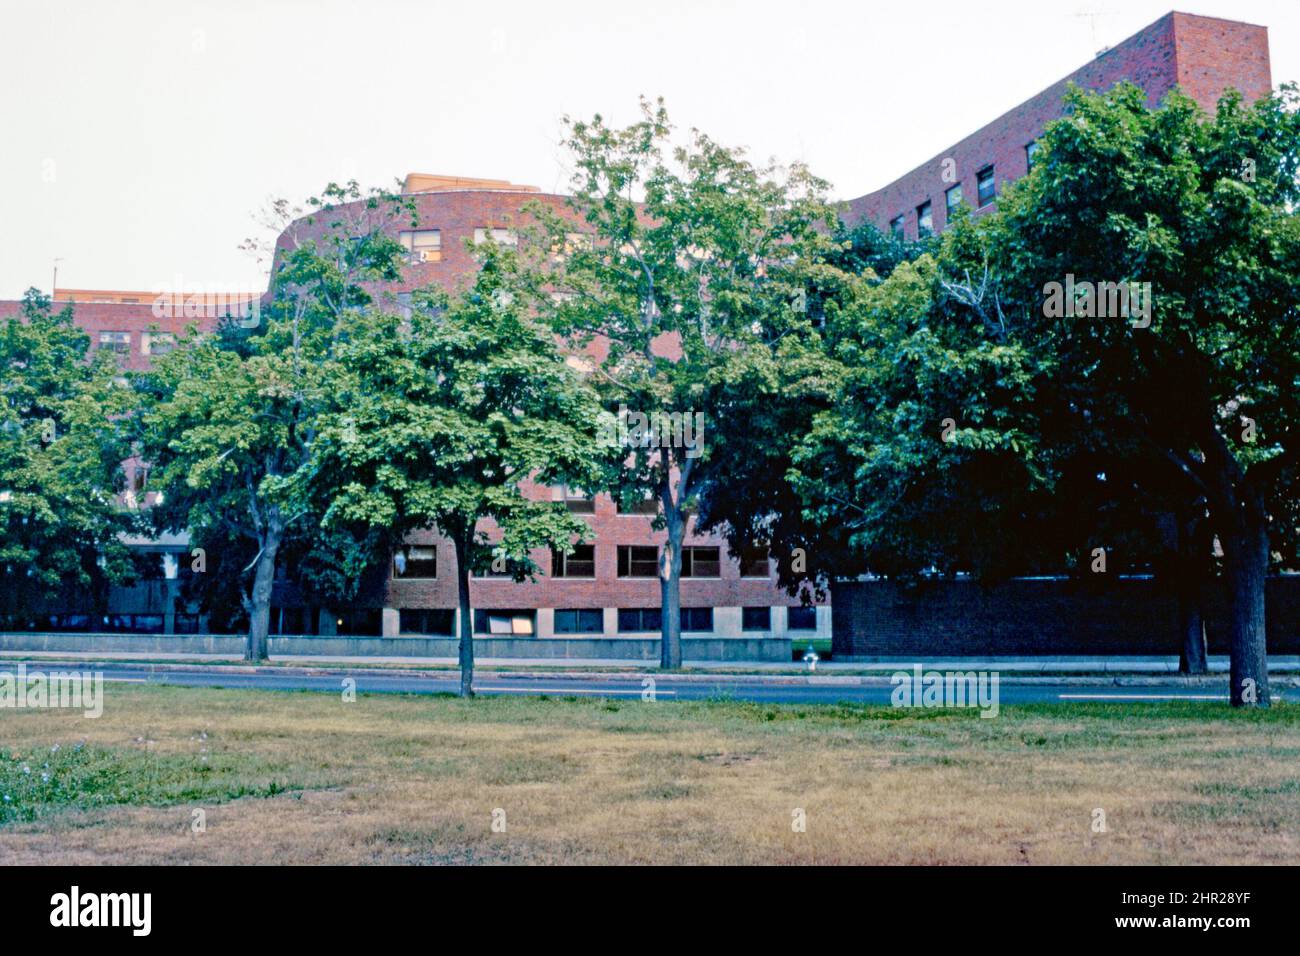 Une vue de 1982 des courbes distinctives de Baker House, au Massachusetts Institute of Technology, Cambridge, Massachusetts, Etats-Unis. Lvar Aalto a conçu le dortoir de Baker House en 1946 alors qu'il était professeur au Massachusetts Institute of Technology (MIT). Hugo Alvar Henrik (Ivar) Aalto (1898–1976) est un architecte et designer finlandais. Le dortoir était l'un de ses bâtiments aux Etats-Unis. Le bloc de dortoir est revêtu de briques de la Nouvelle-Angleterre, avec sa texture rugueuse, pour recouvrir les courbes de la serpentine du bâtiment. Cette image est tirée d'une ancienne transparence de couleur amateur – une photographie vintage 1980s. Banque D'Images